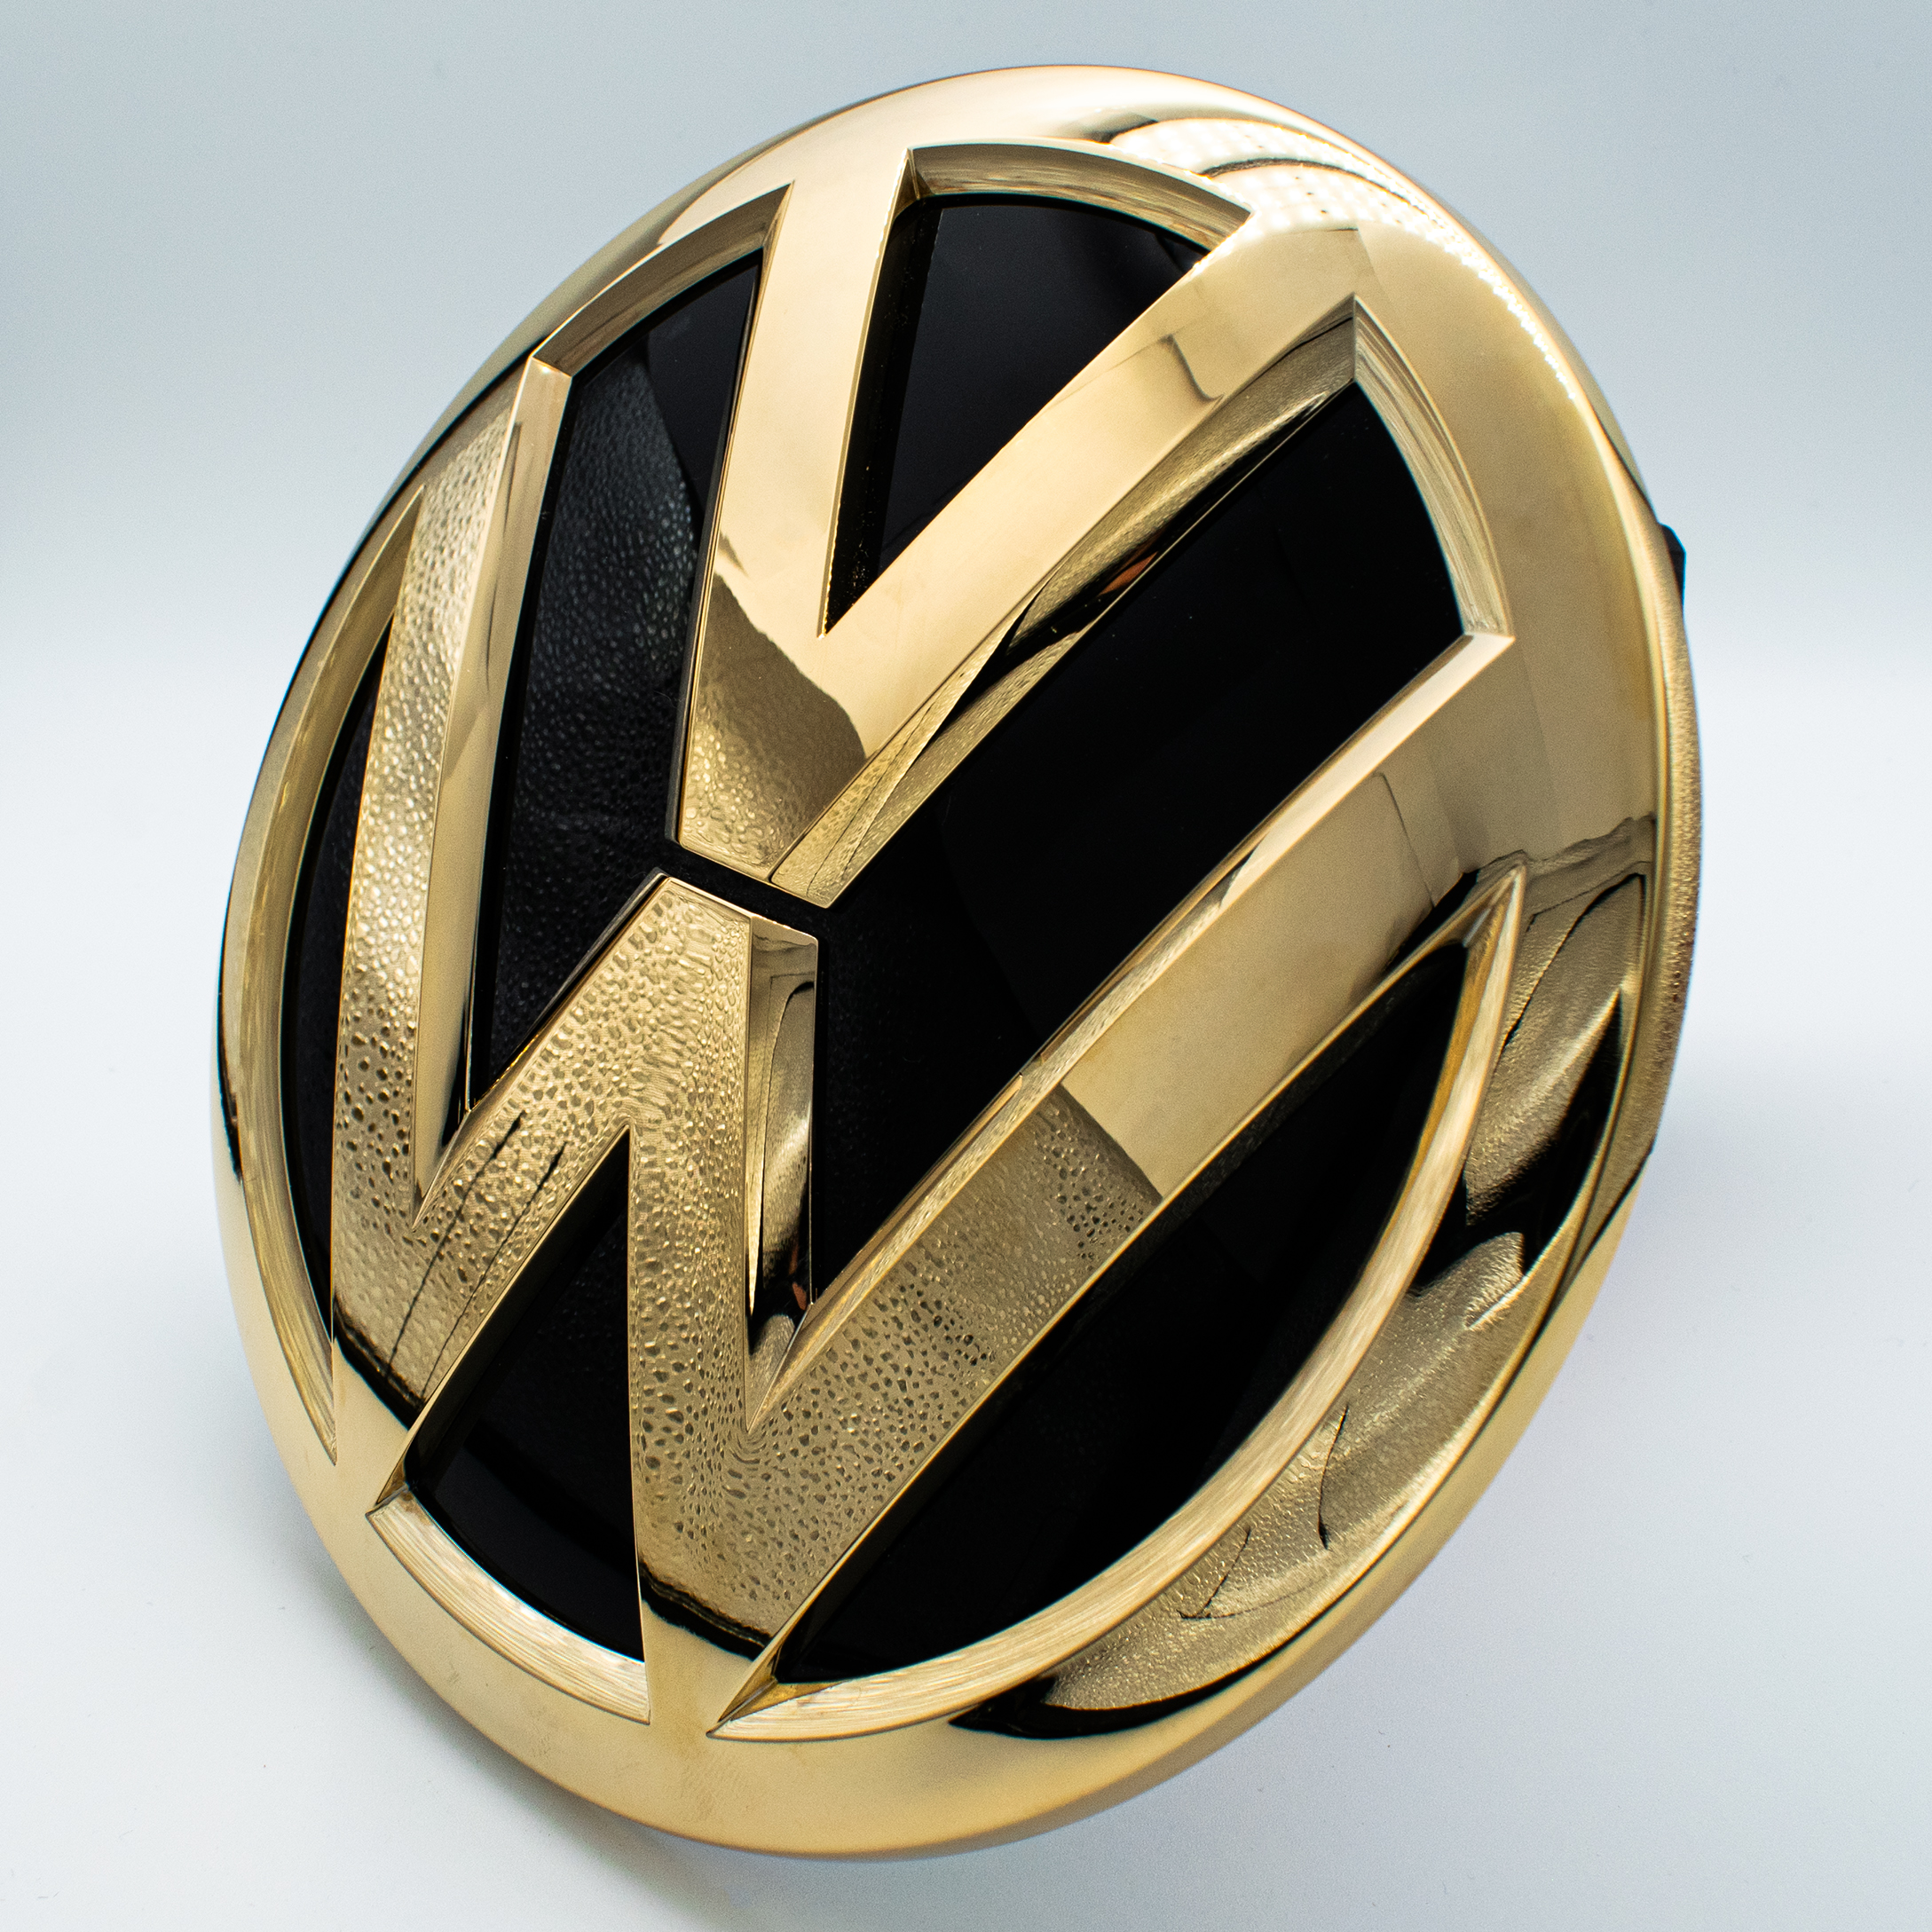 Vergoldete Embleme VW vergolden lassen DARK Galvanik